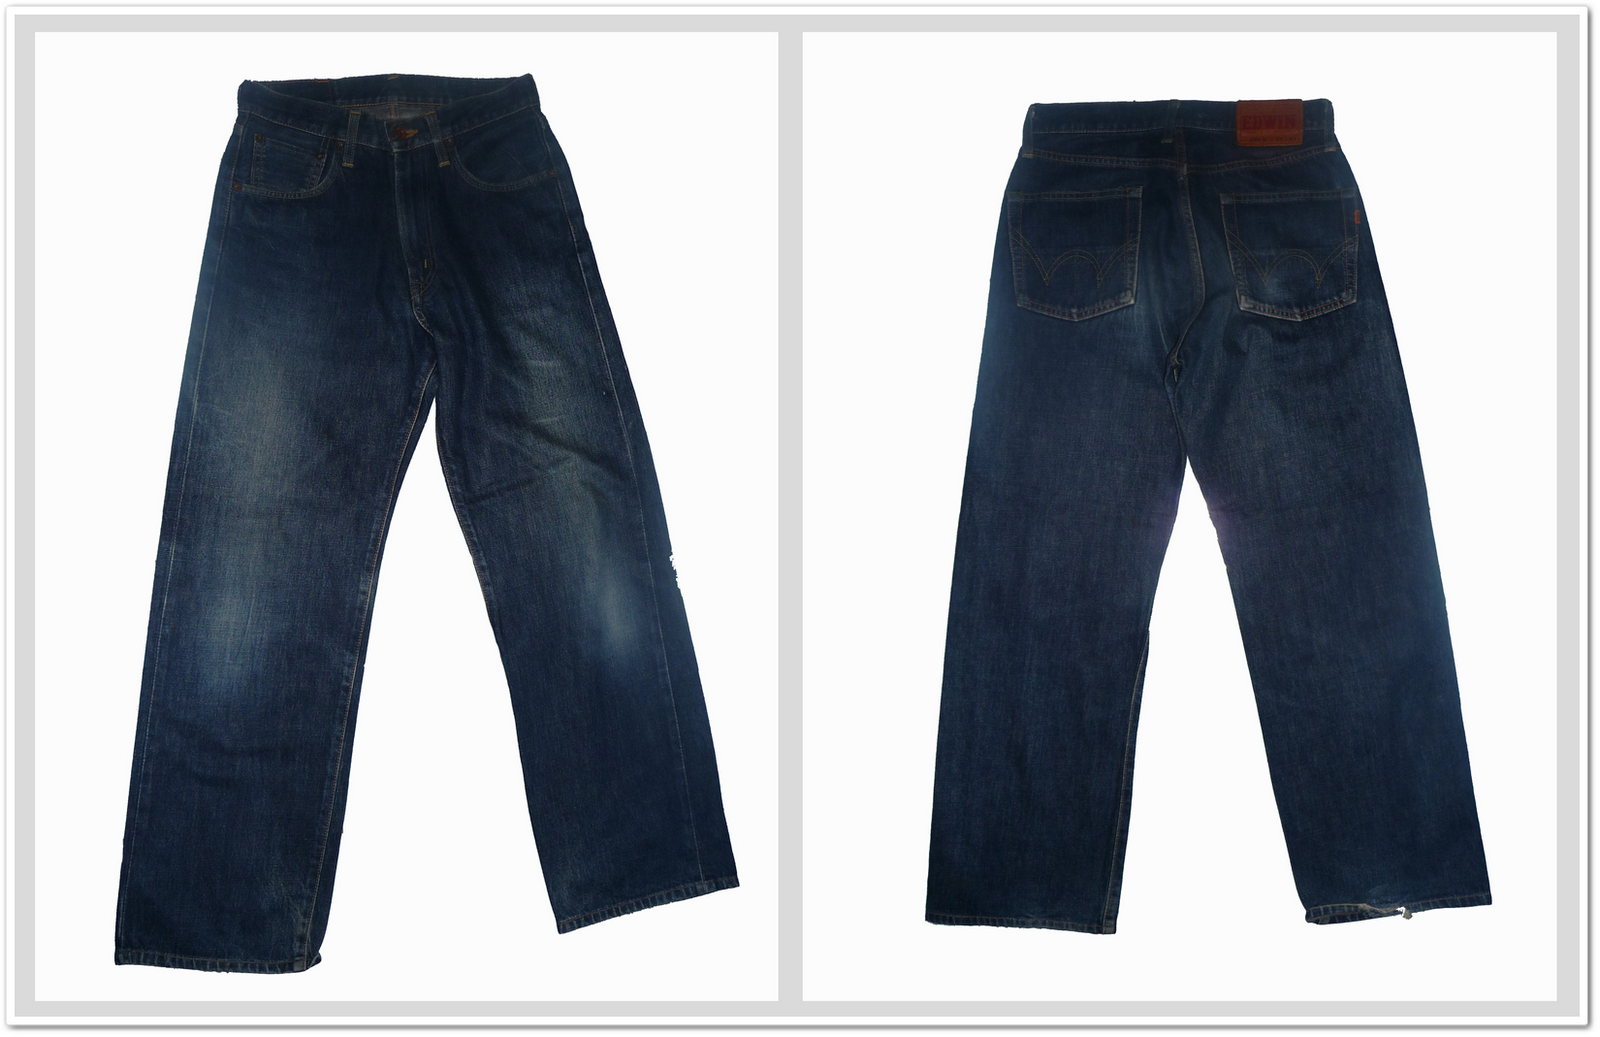 Dallek Shop - Bundle Online Shoping: Edwin 505X Jeans (Kepala Kain)